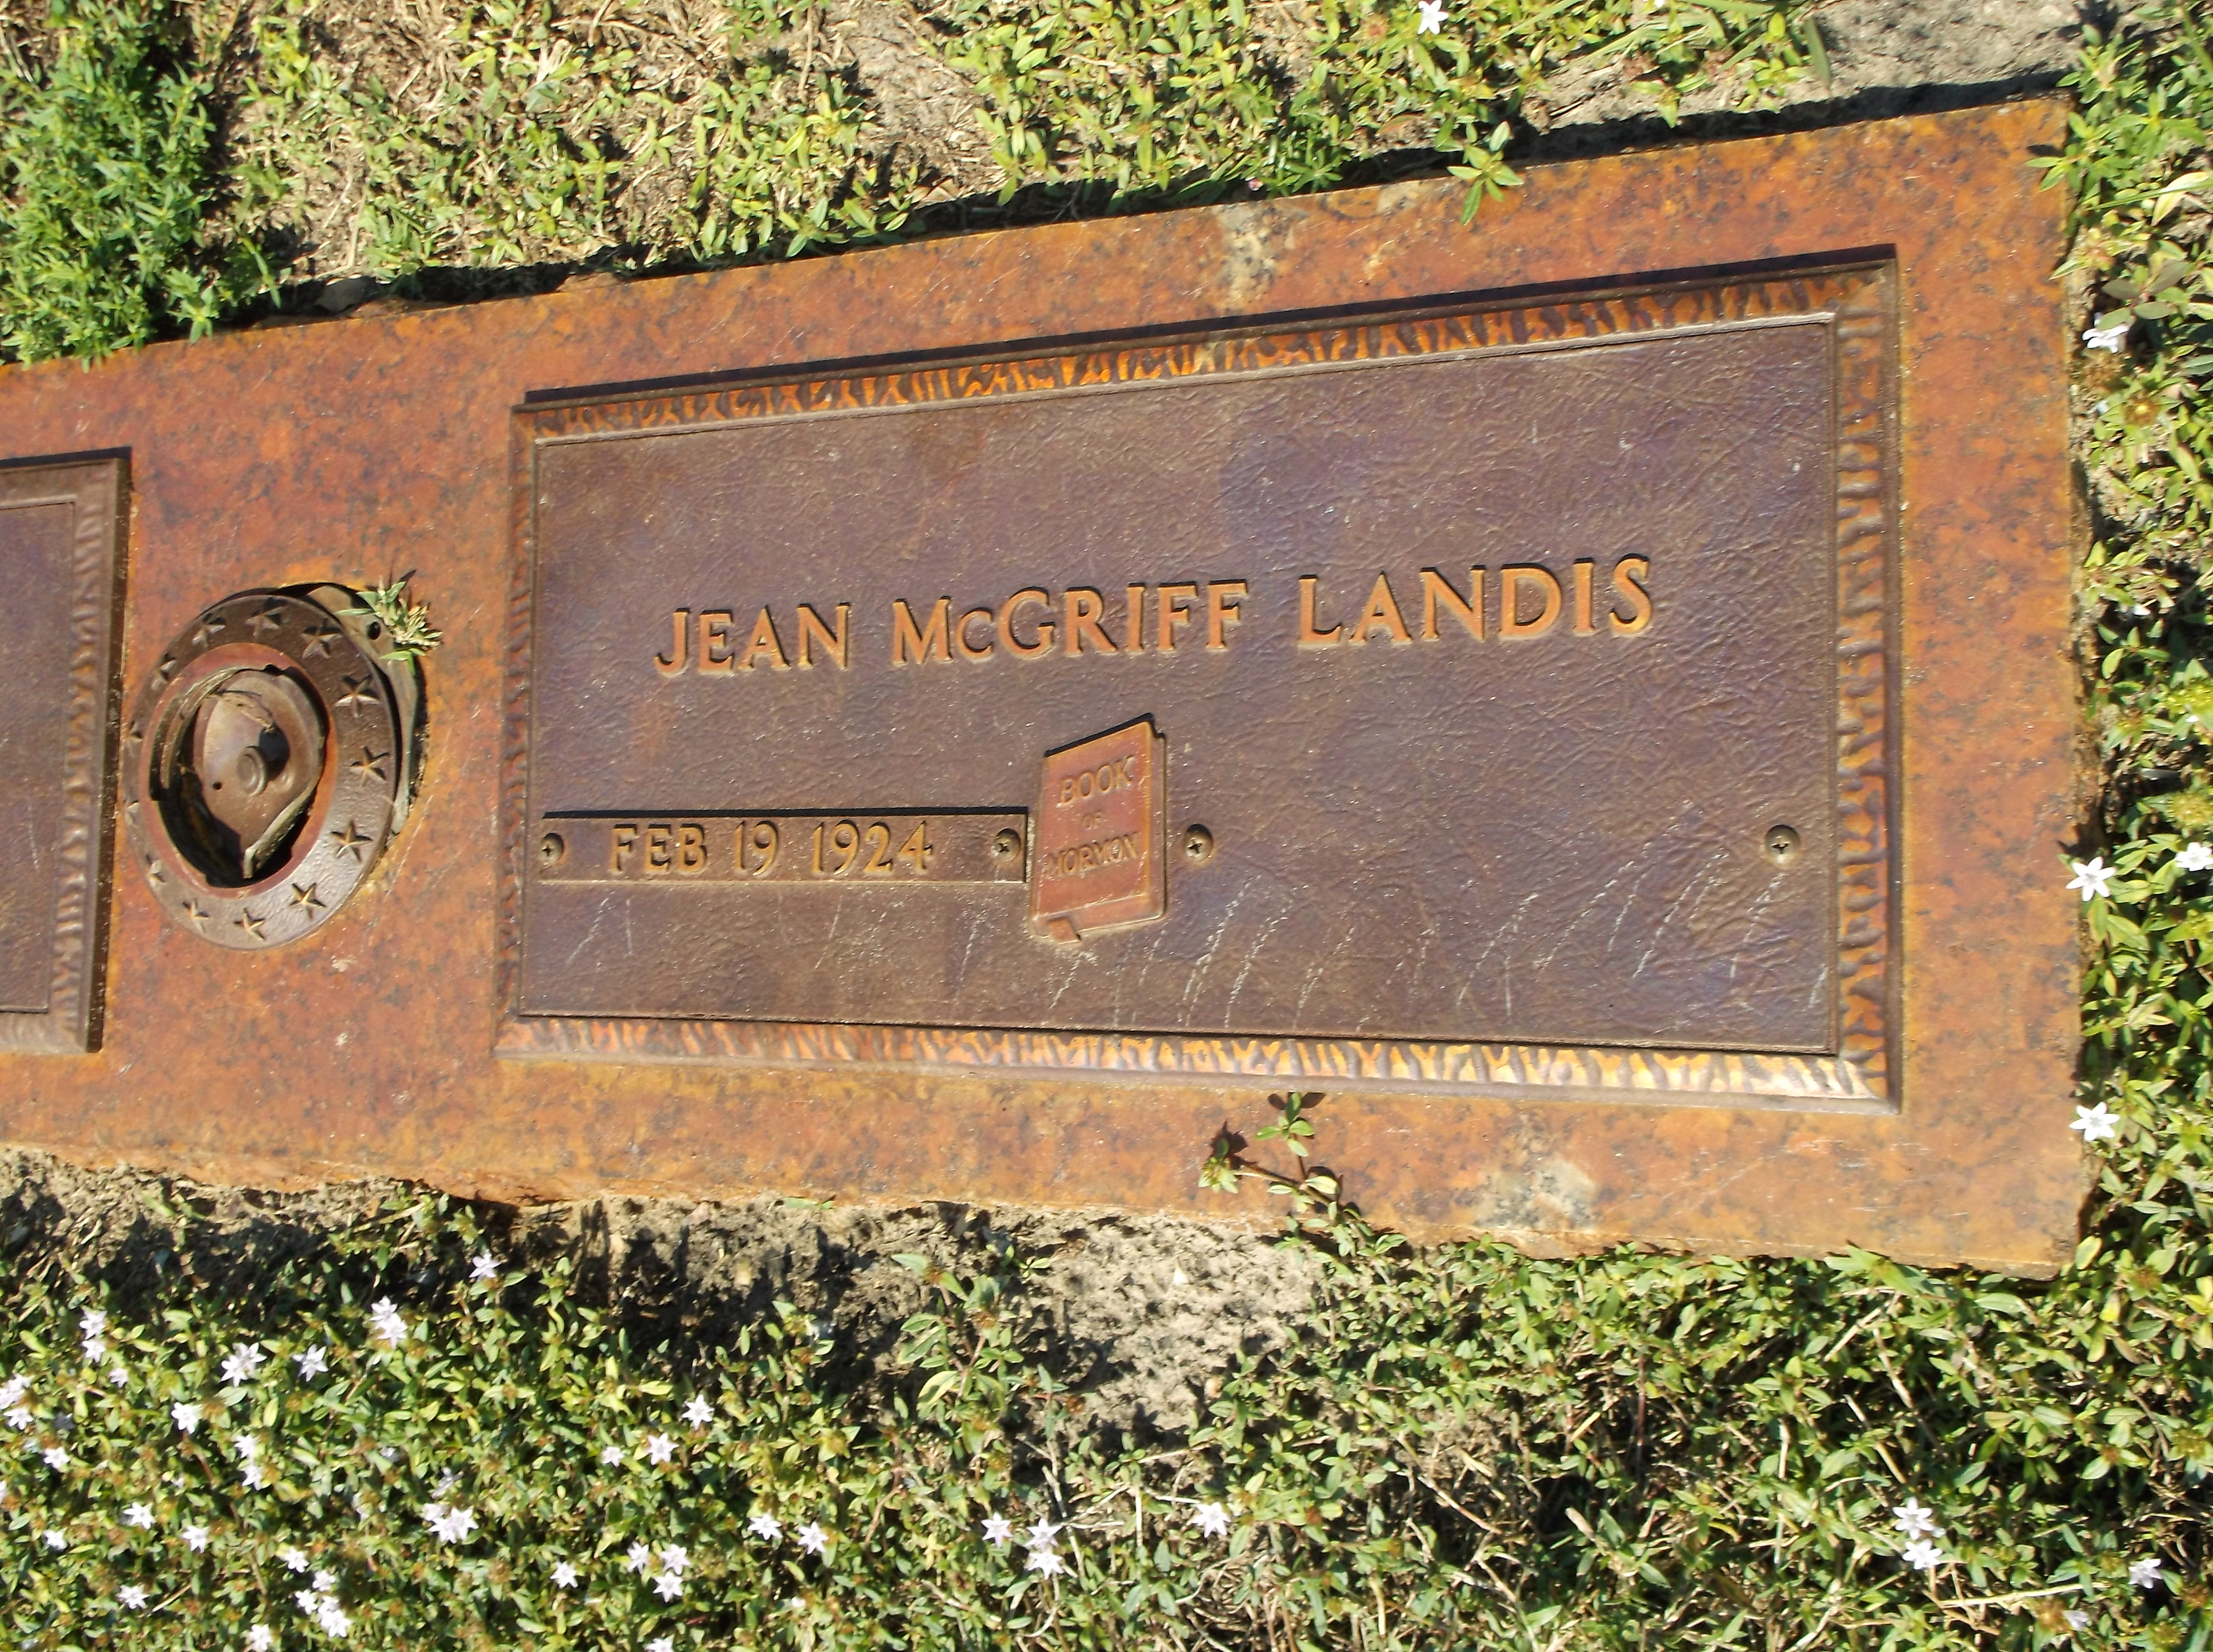 Jean McGriff Landis